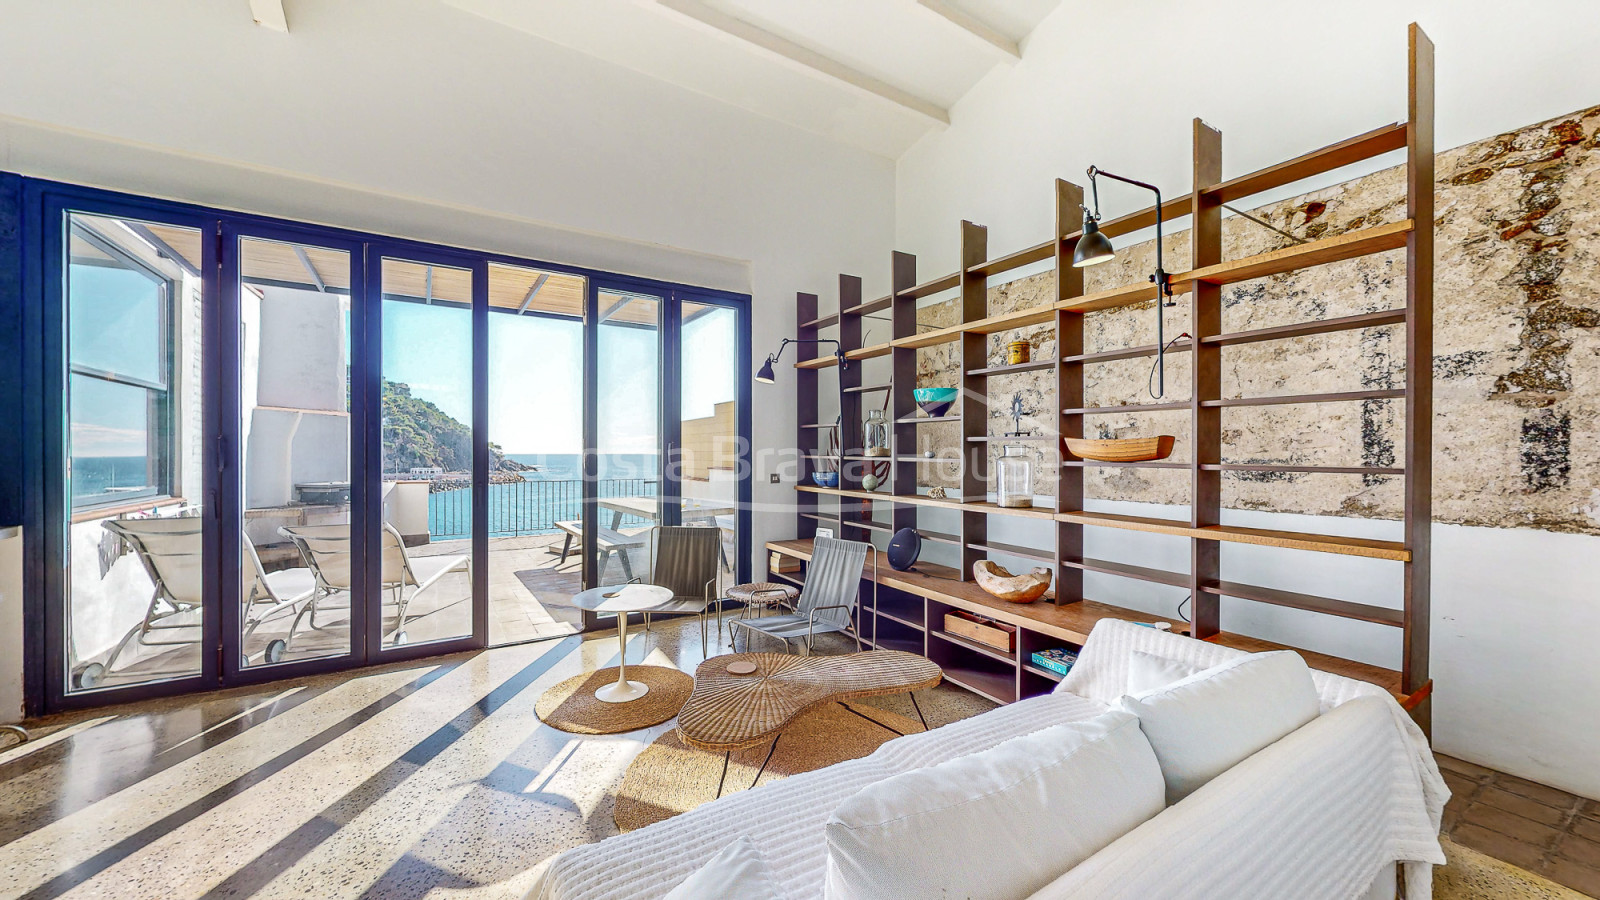 Casa en venta en Llafranc con vista mar y acceso directo a la playa